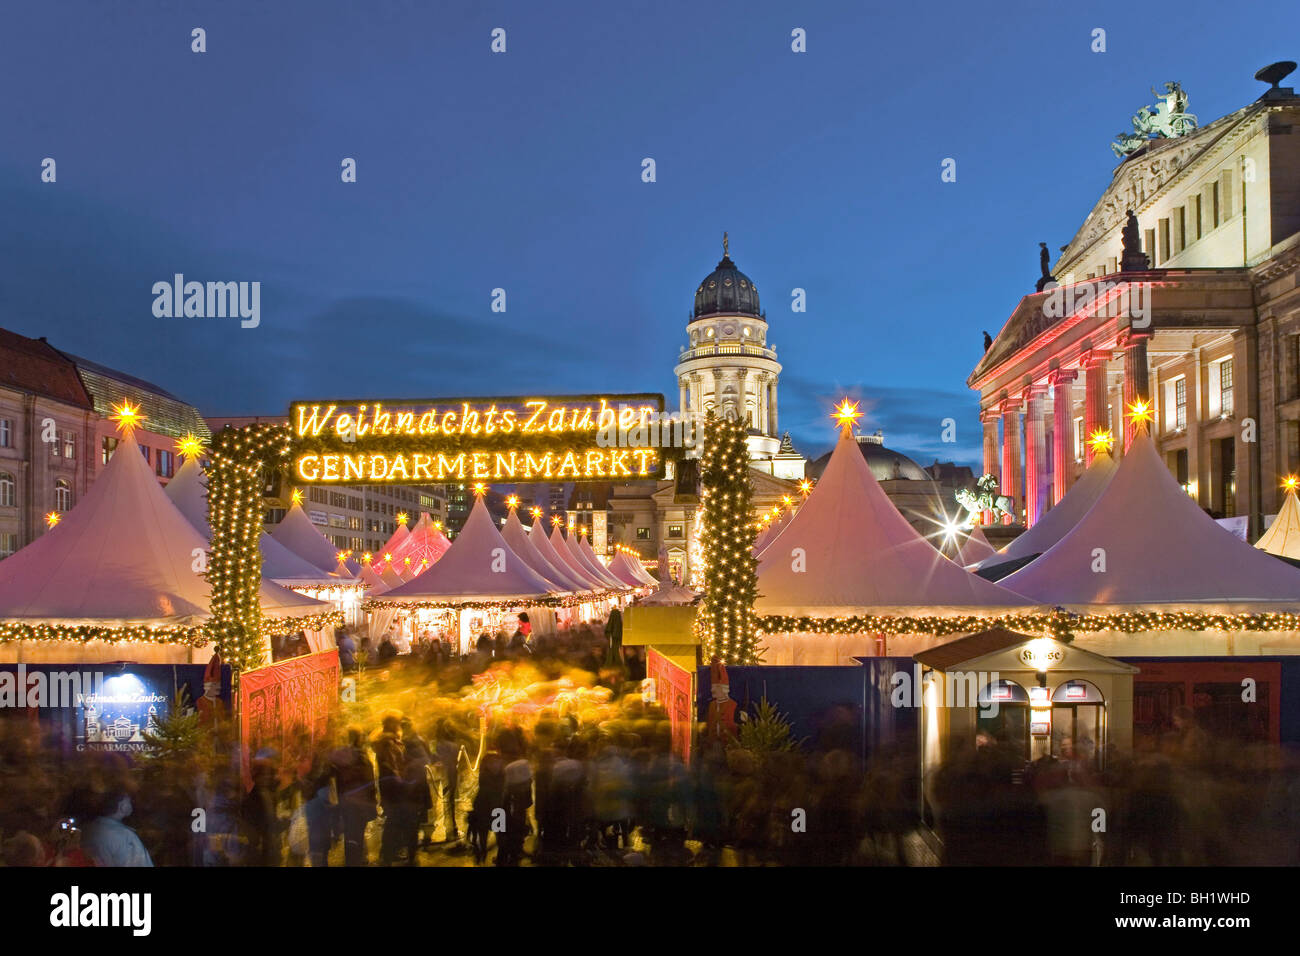 Weihnachtsmarkt bei Nacht, Gendarmenmarkt, Berlin, Germany Stockfoto